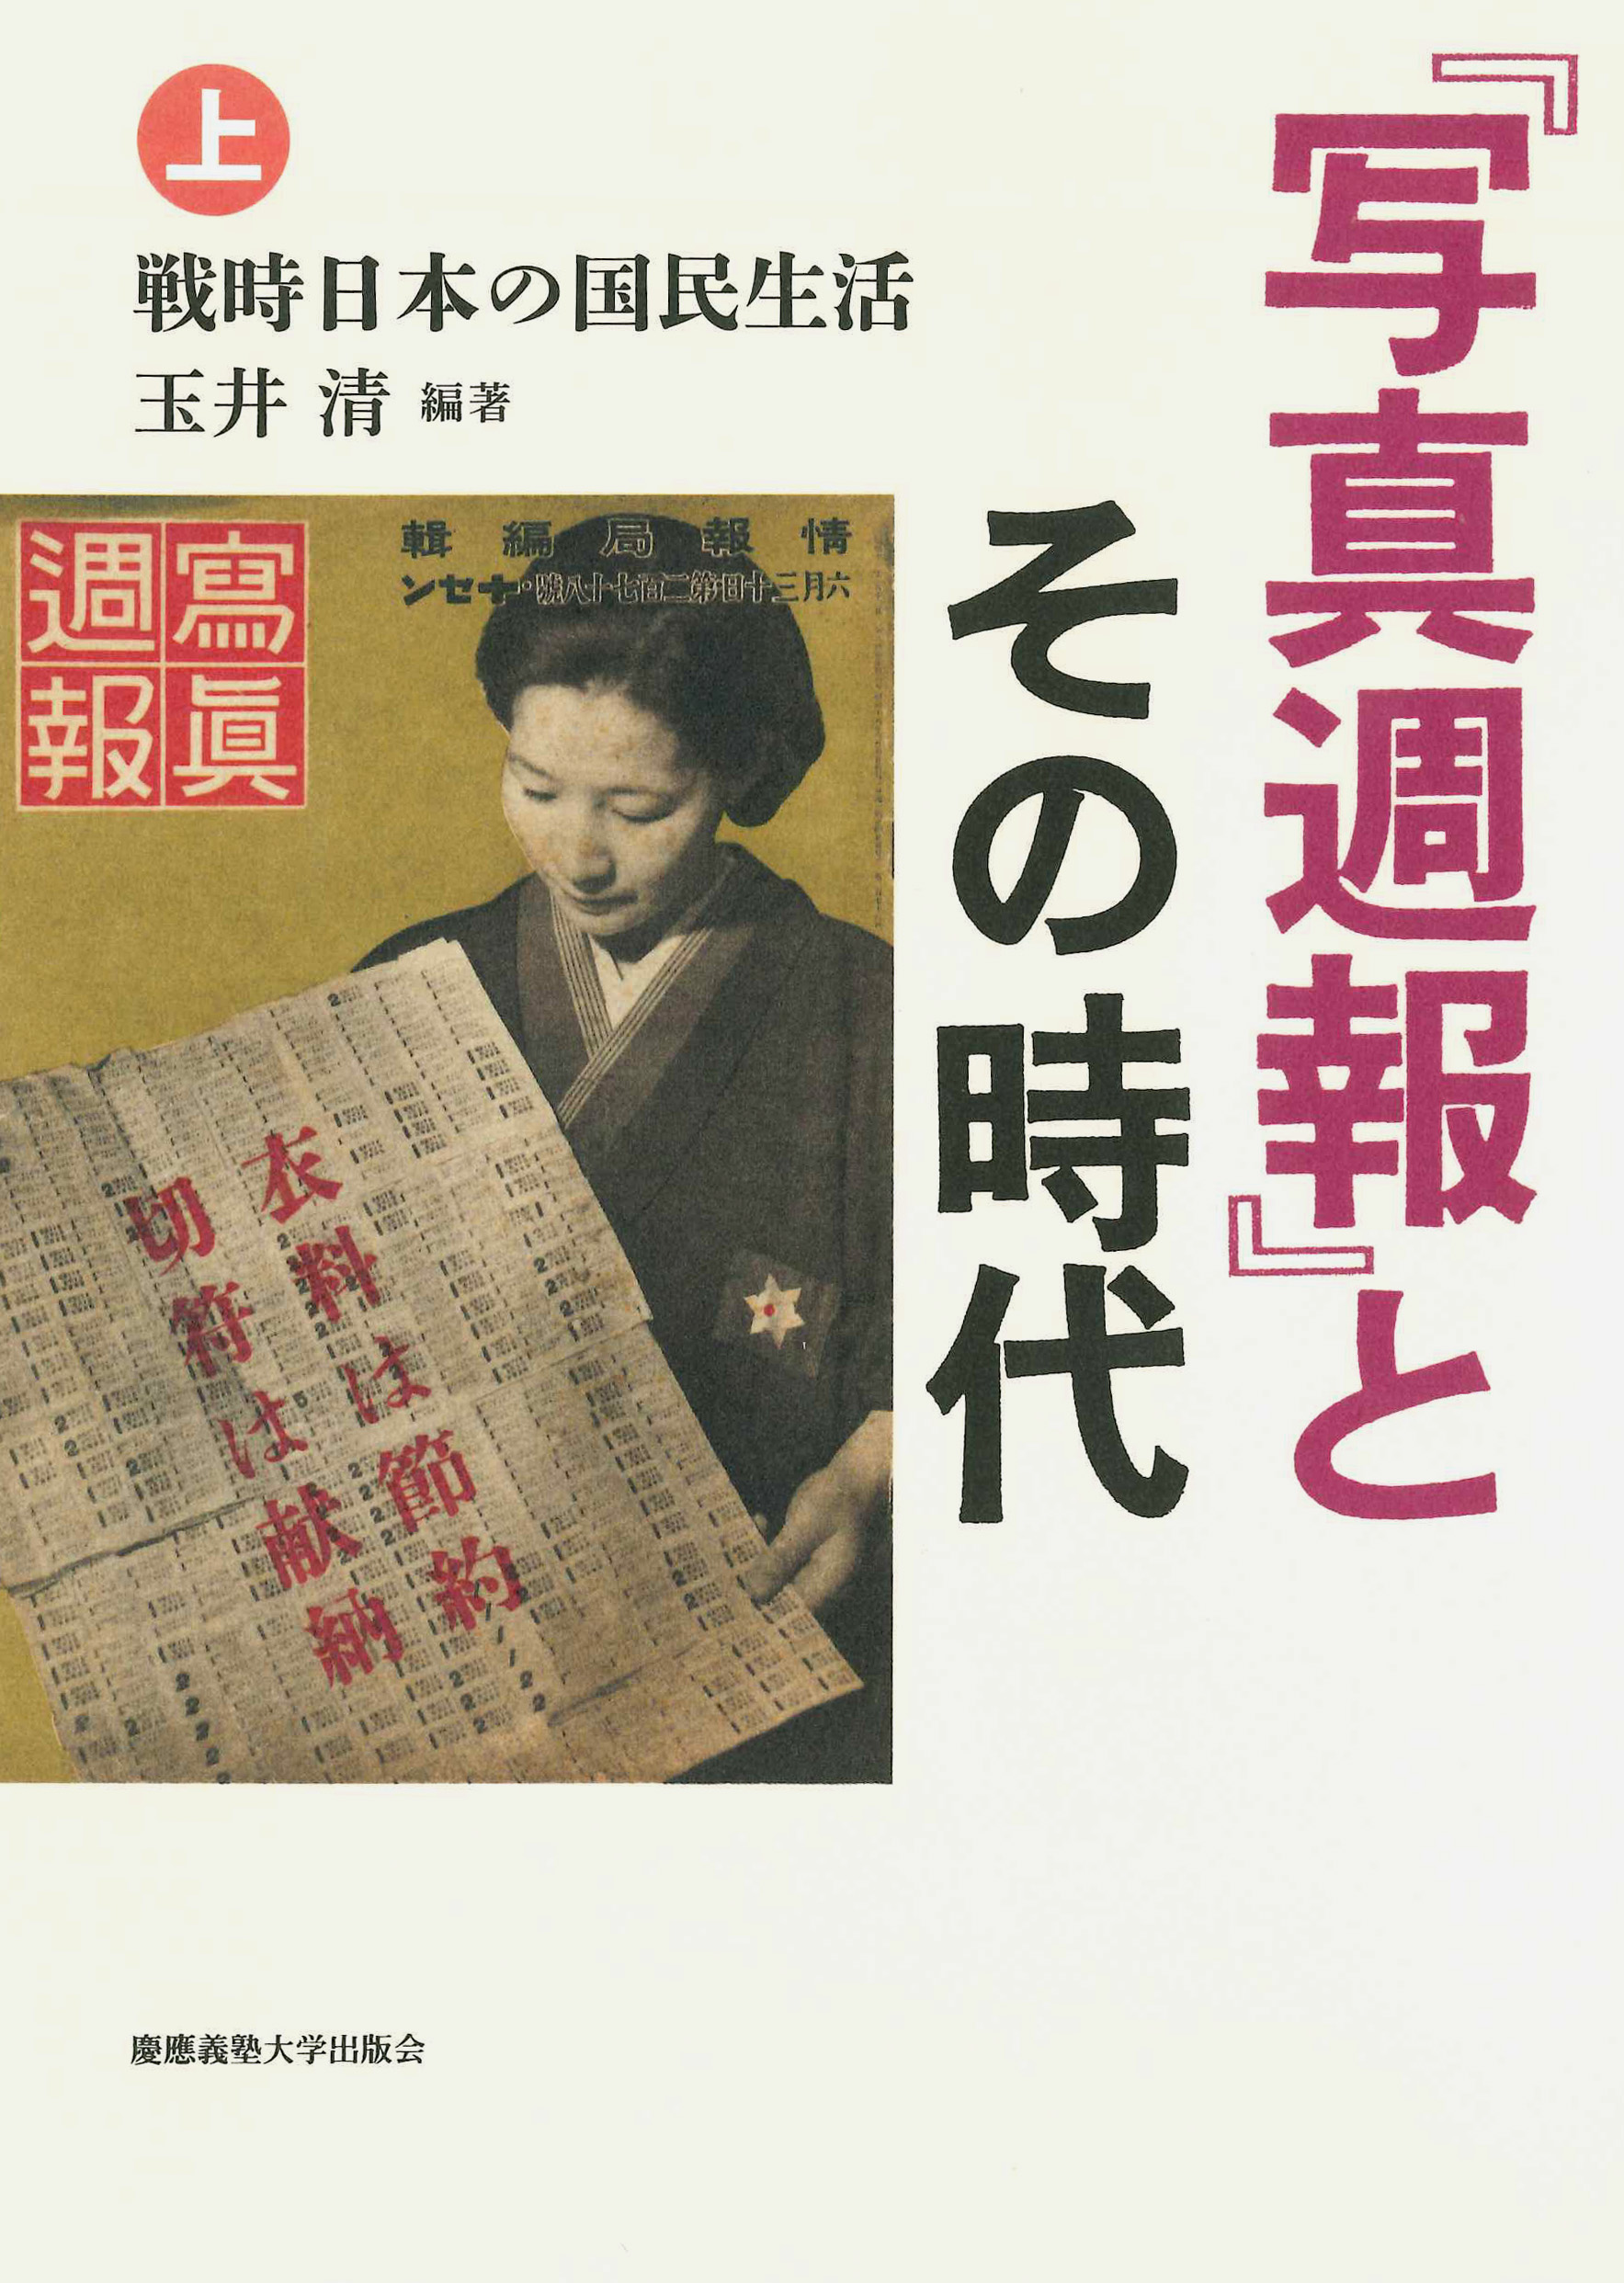 
『写真週報』とその時代（上）
――戦時日本の国民生活
玉井 清編著